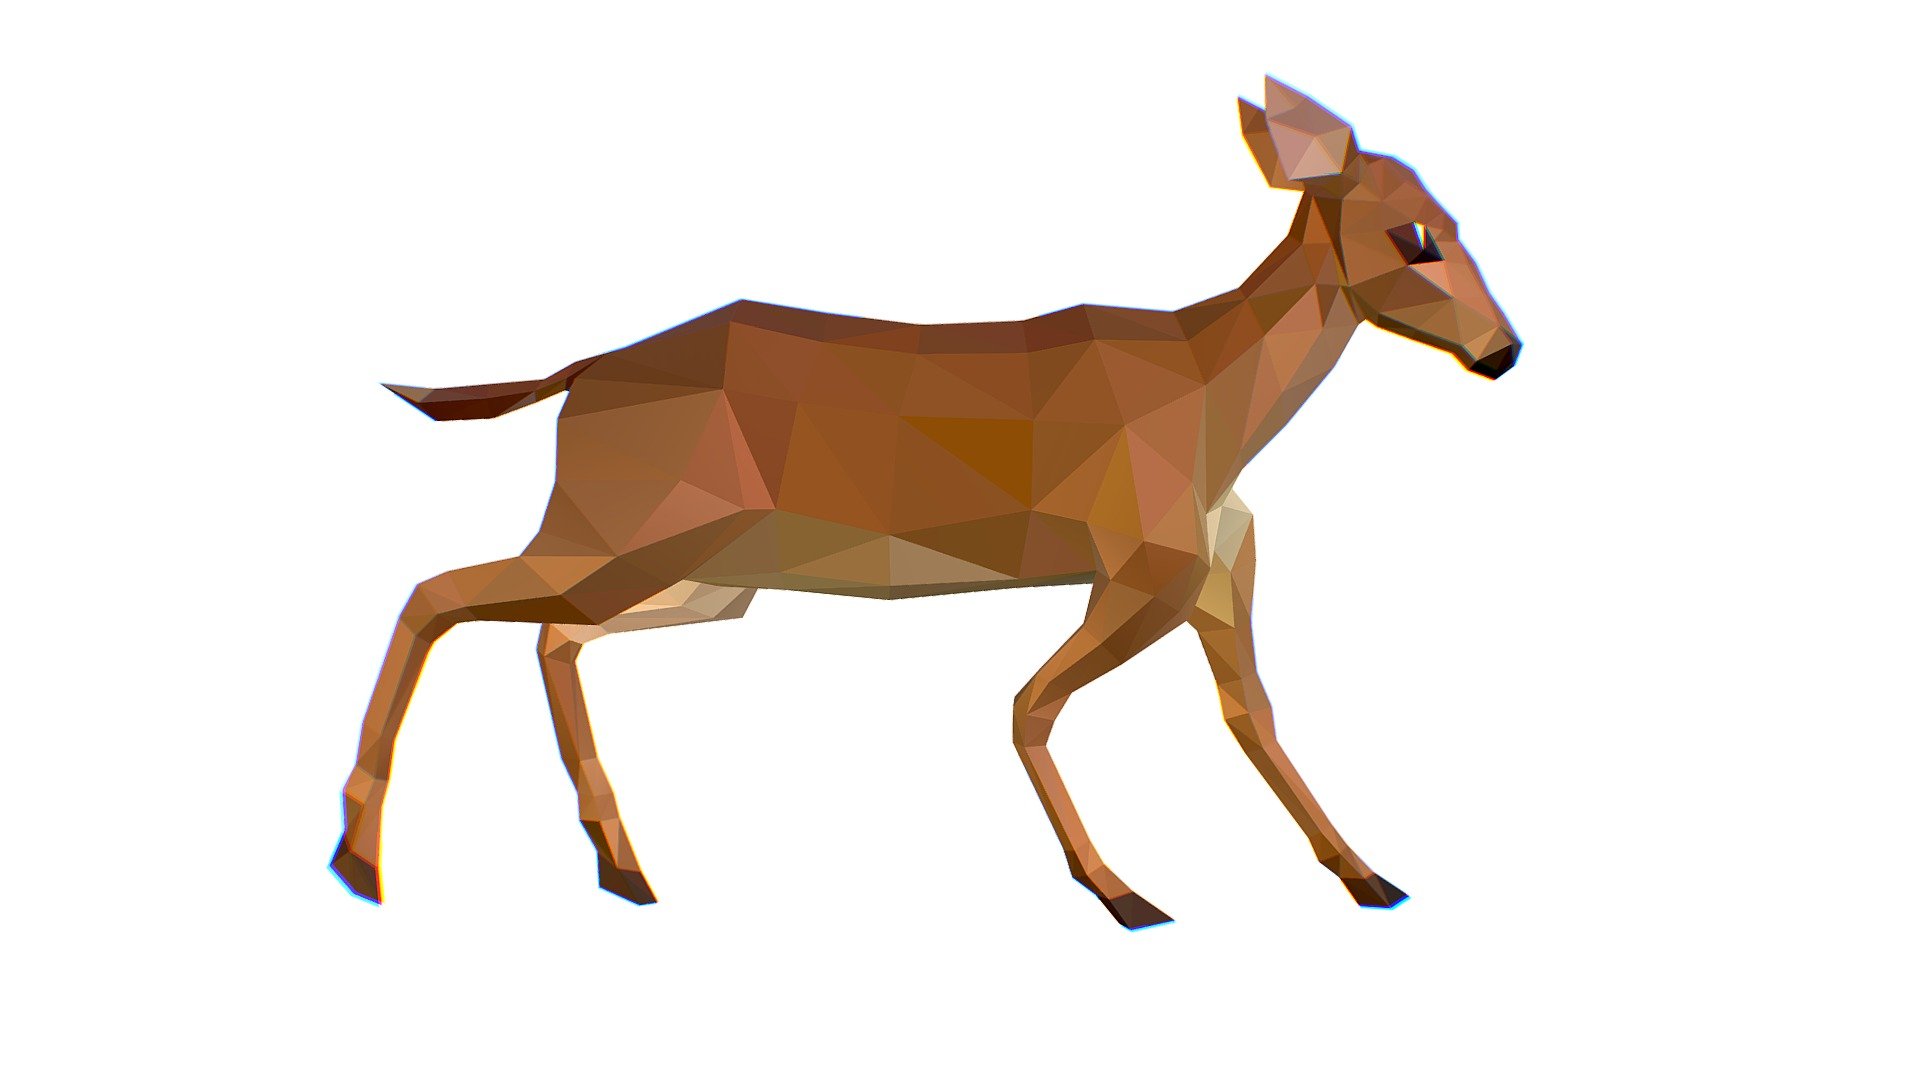 Animated Deer Lowpoly Art Style

Animation layers:
Run   0-19
Walk  20-49
Fallow  50-111
idle  111-166
Turn 166-201 - Animated Deer Lowpoly Art Style - Buy Royalty Free 3D model by Oleg Shuldiakov (@olegshuldiakov) 3d model